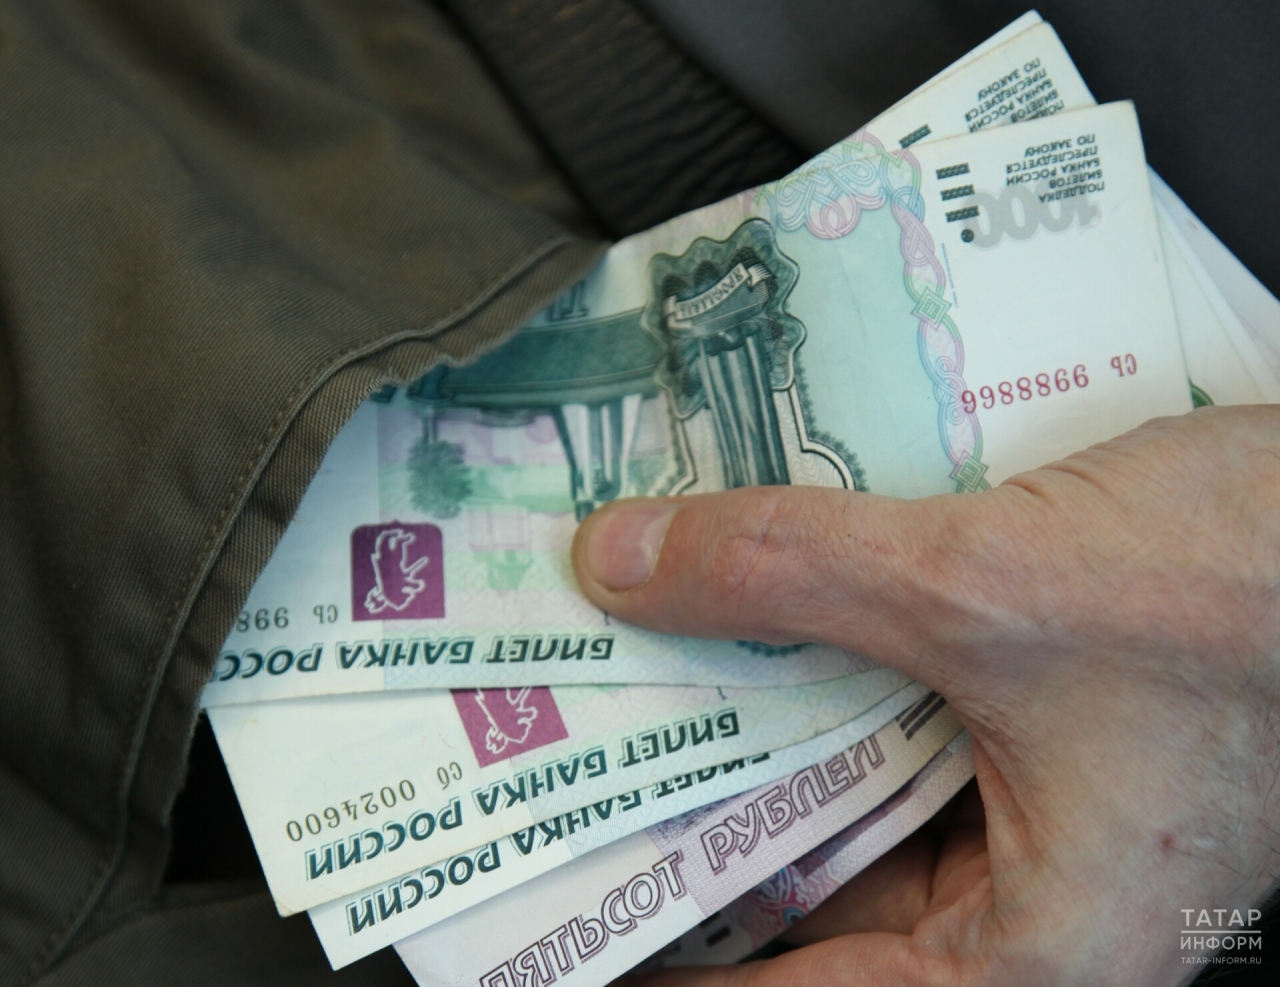 Старые купюры в 1 и 5 тыс. рублей выйдут из обращения по мере естественного износа